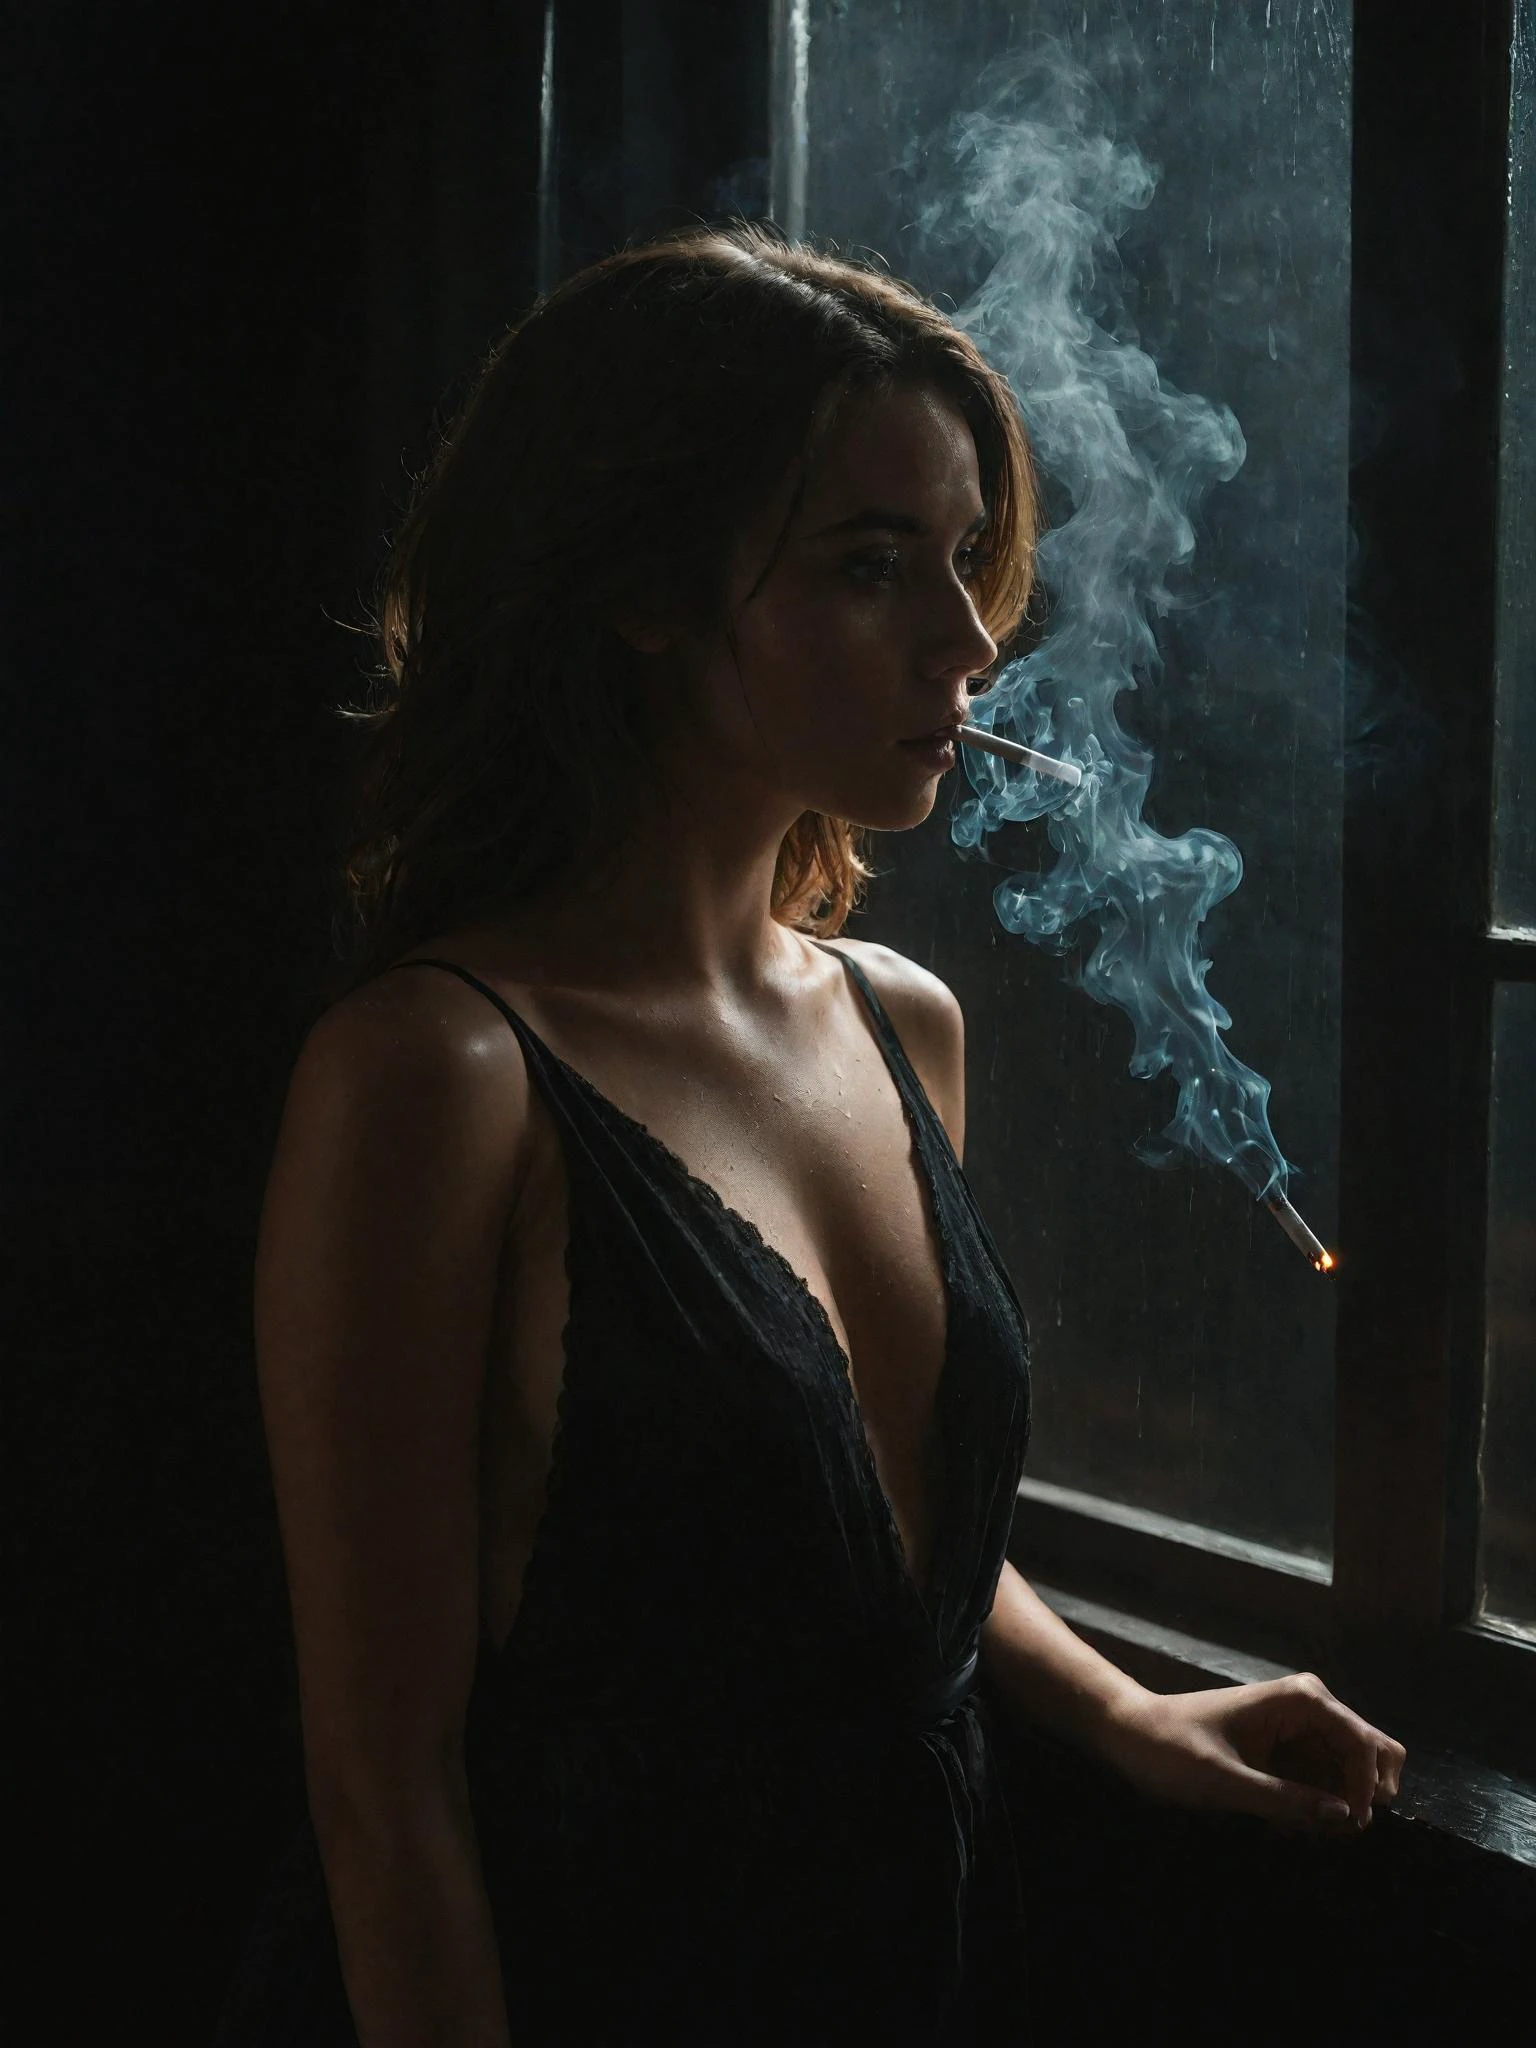 Foto modelo de una mujer francesa de 38 años fumando un cigarrillo encendido en una habitación oscura mientras mira por la ventana, (silueta:1.2), de pie en una habitación de motel oscura, vistiendo una modesta bata de descanso, (cara y ojos detallados), pelo revuelto, cara arrugada, Las brasas brillantes del cigarrillo iluminan débilmente su rostro., Las gotas de lluvia salpican el exterior de la ventana., enfoque nítido, iluminación extremadamente oscura, DOF, estético, fotografía profesional de 35 mm, 